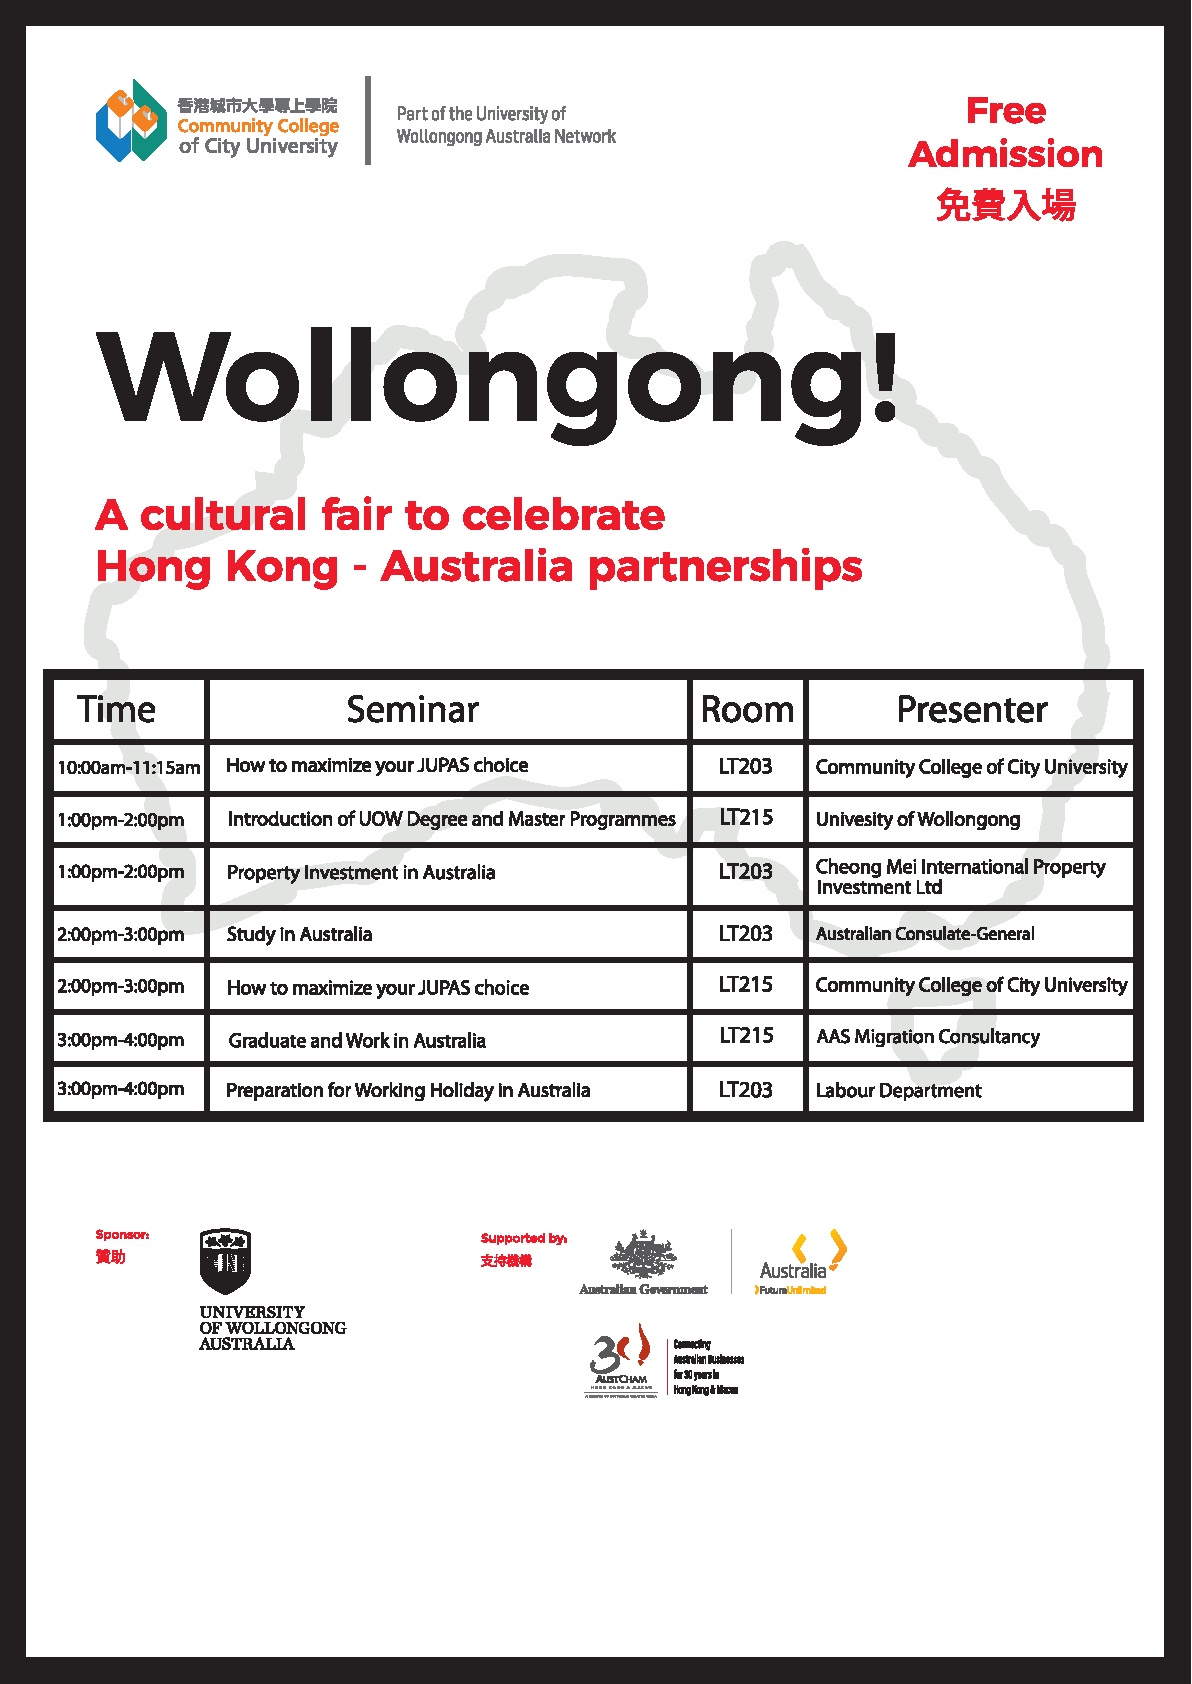 香港城市大学专上学院「Wollongong!」博览会 - 澳洲工作假期讲座图片2